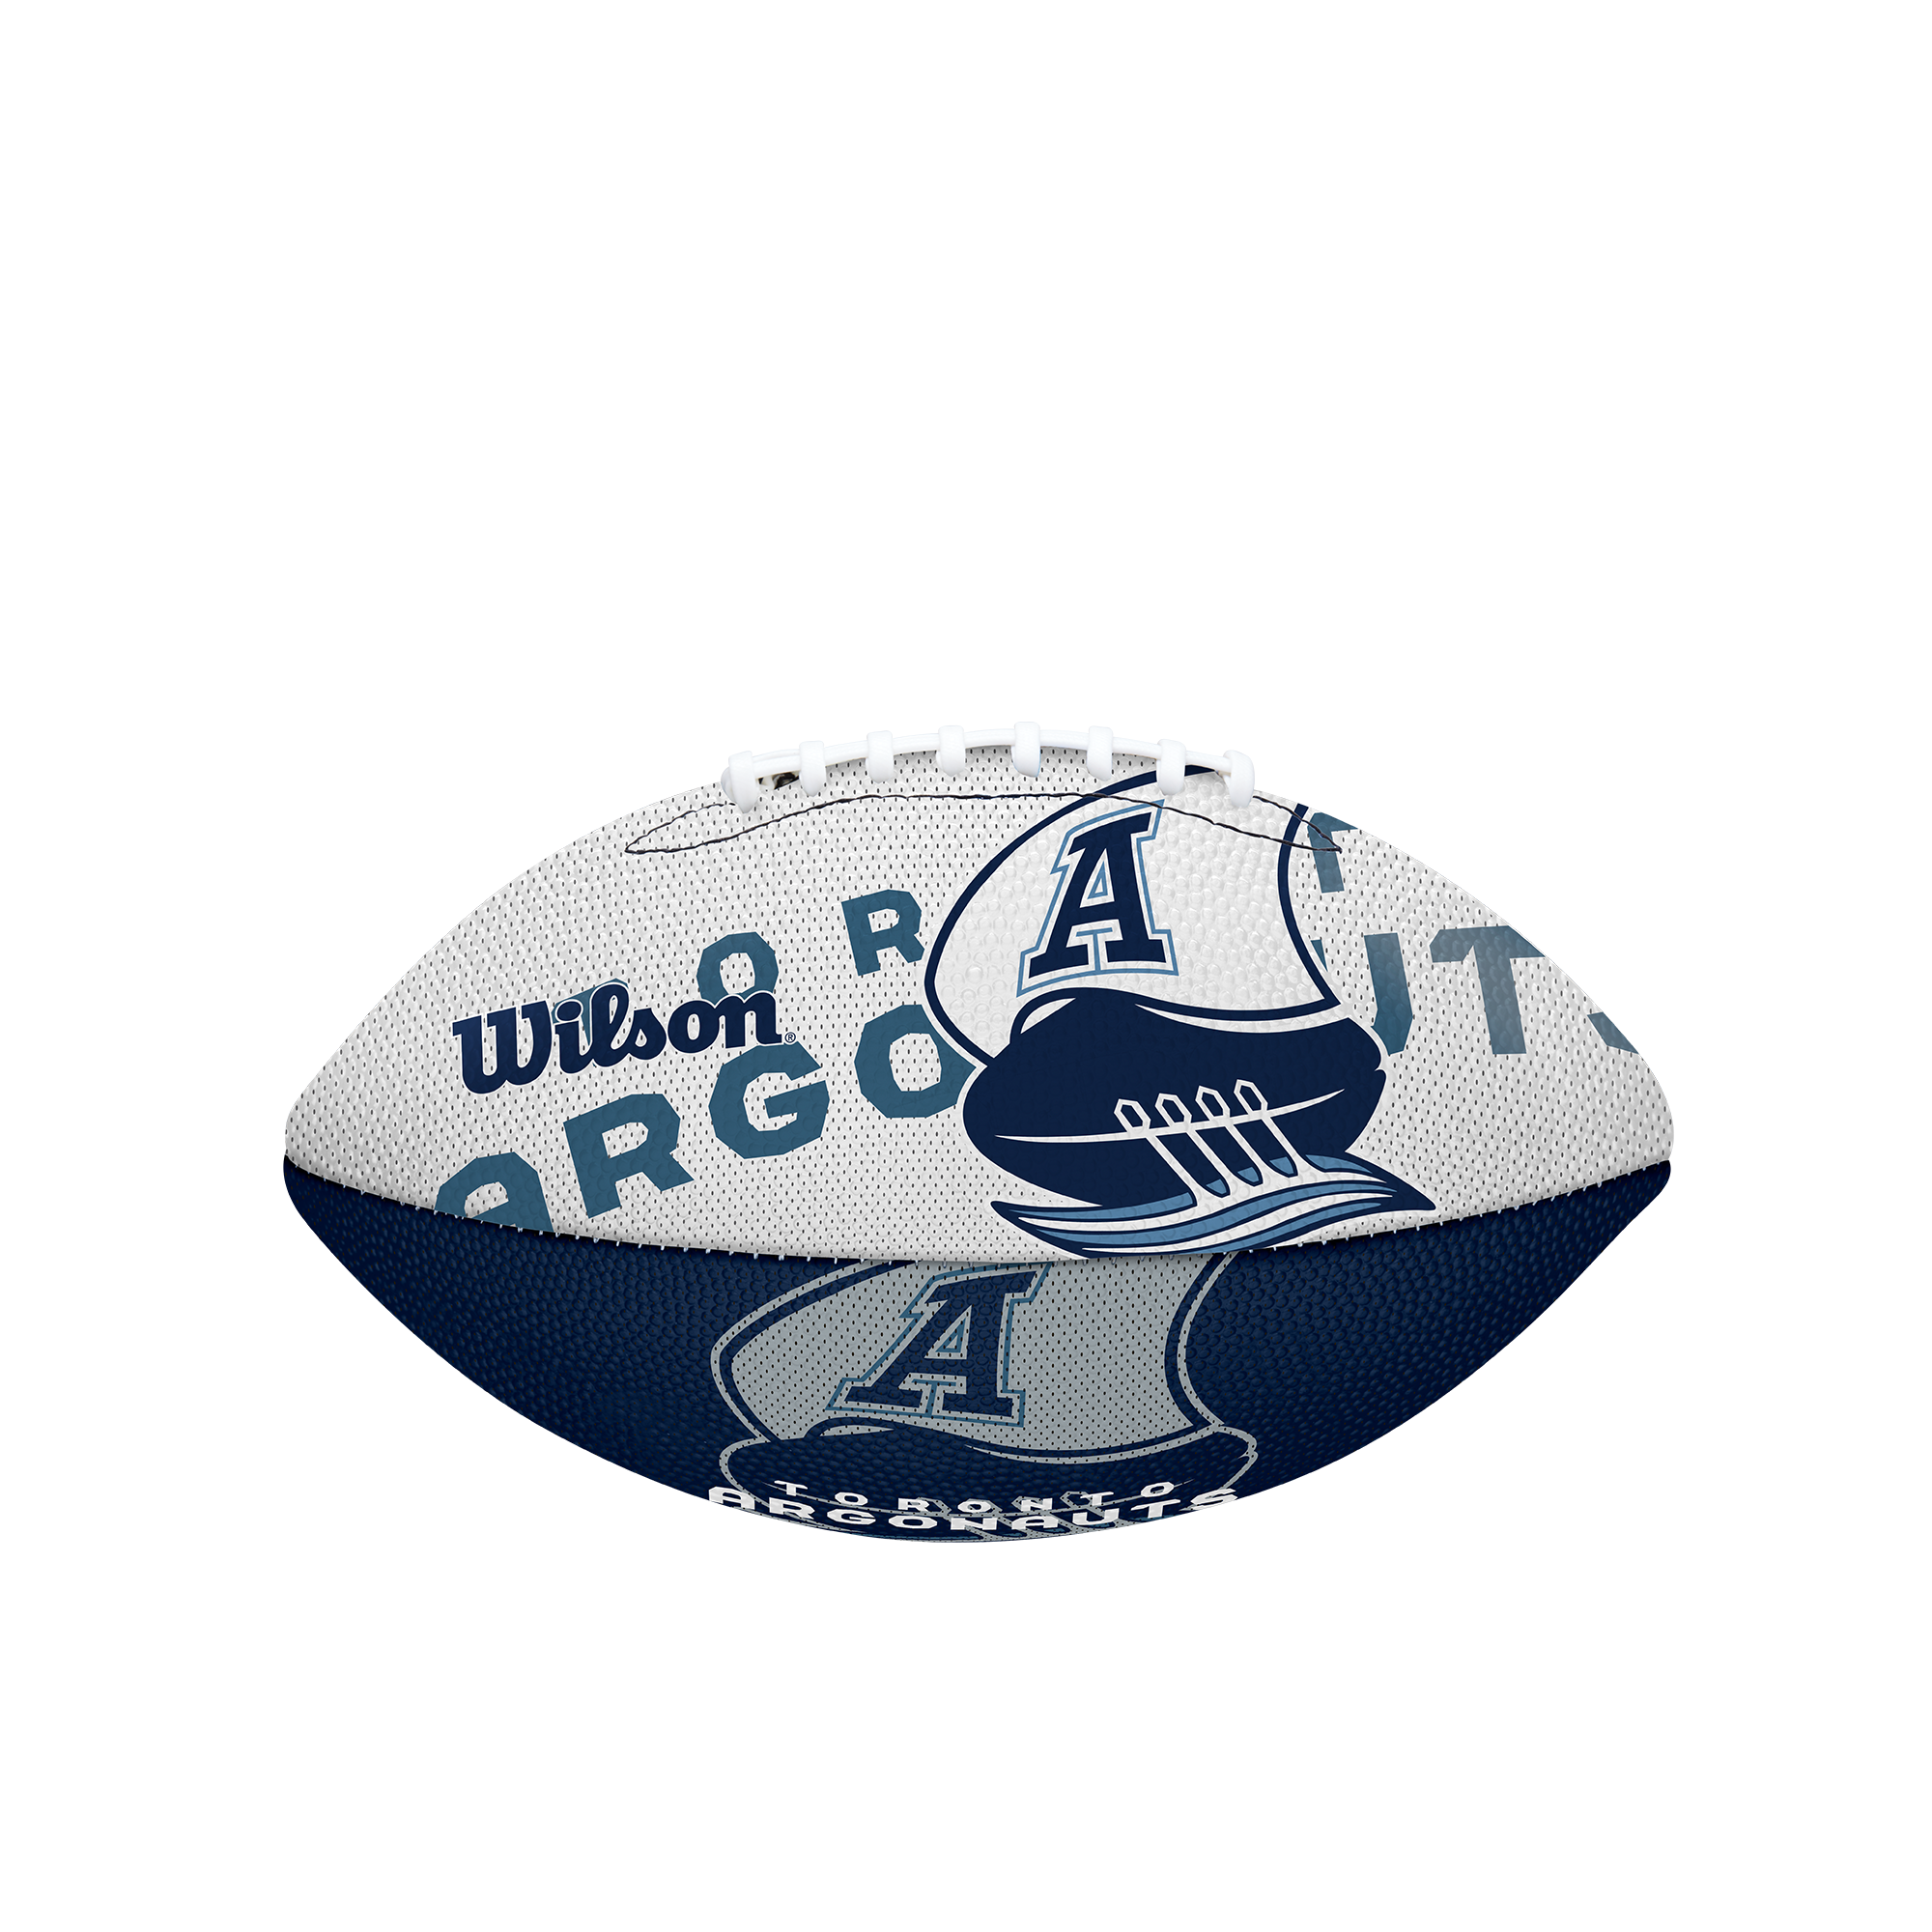 Argos Wilson Wraparound Double Blue Jr Football